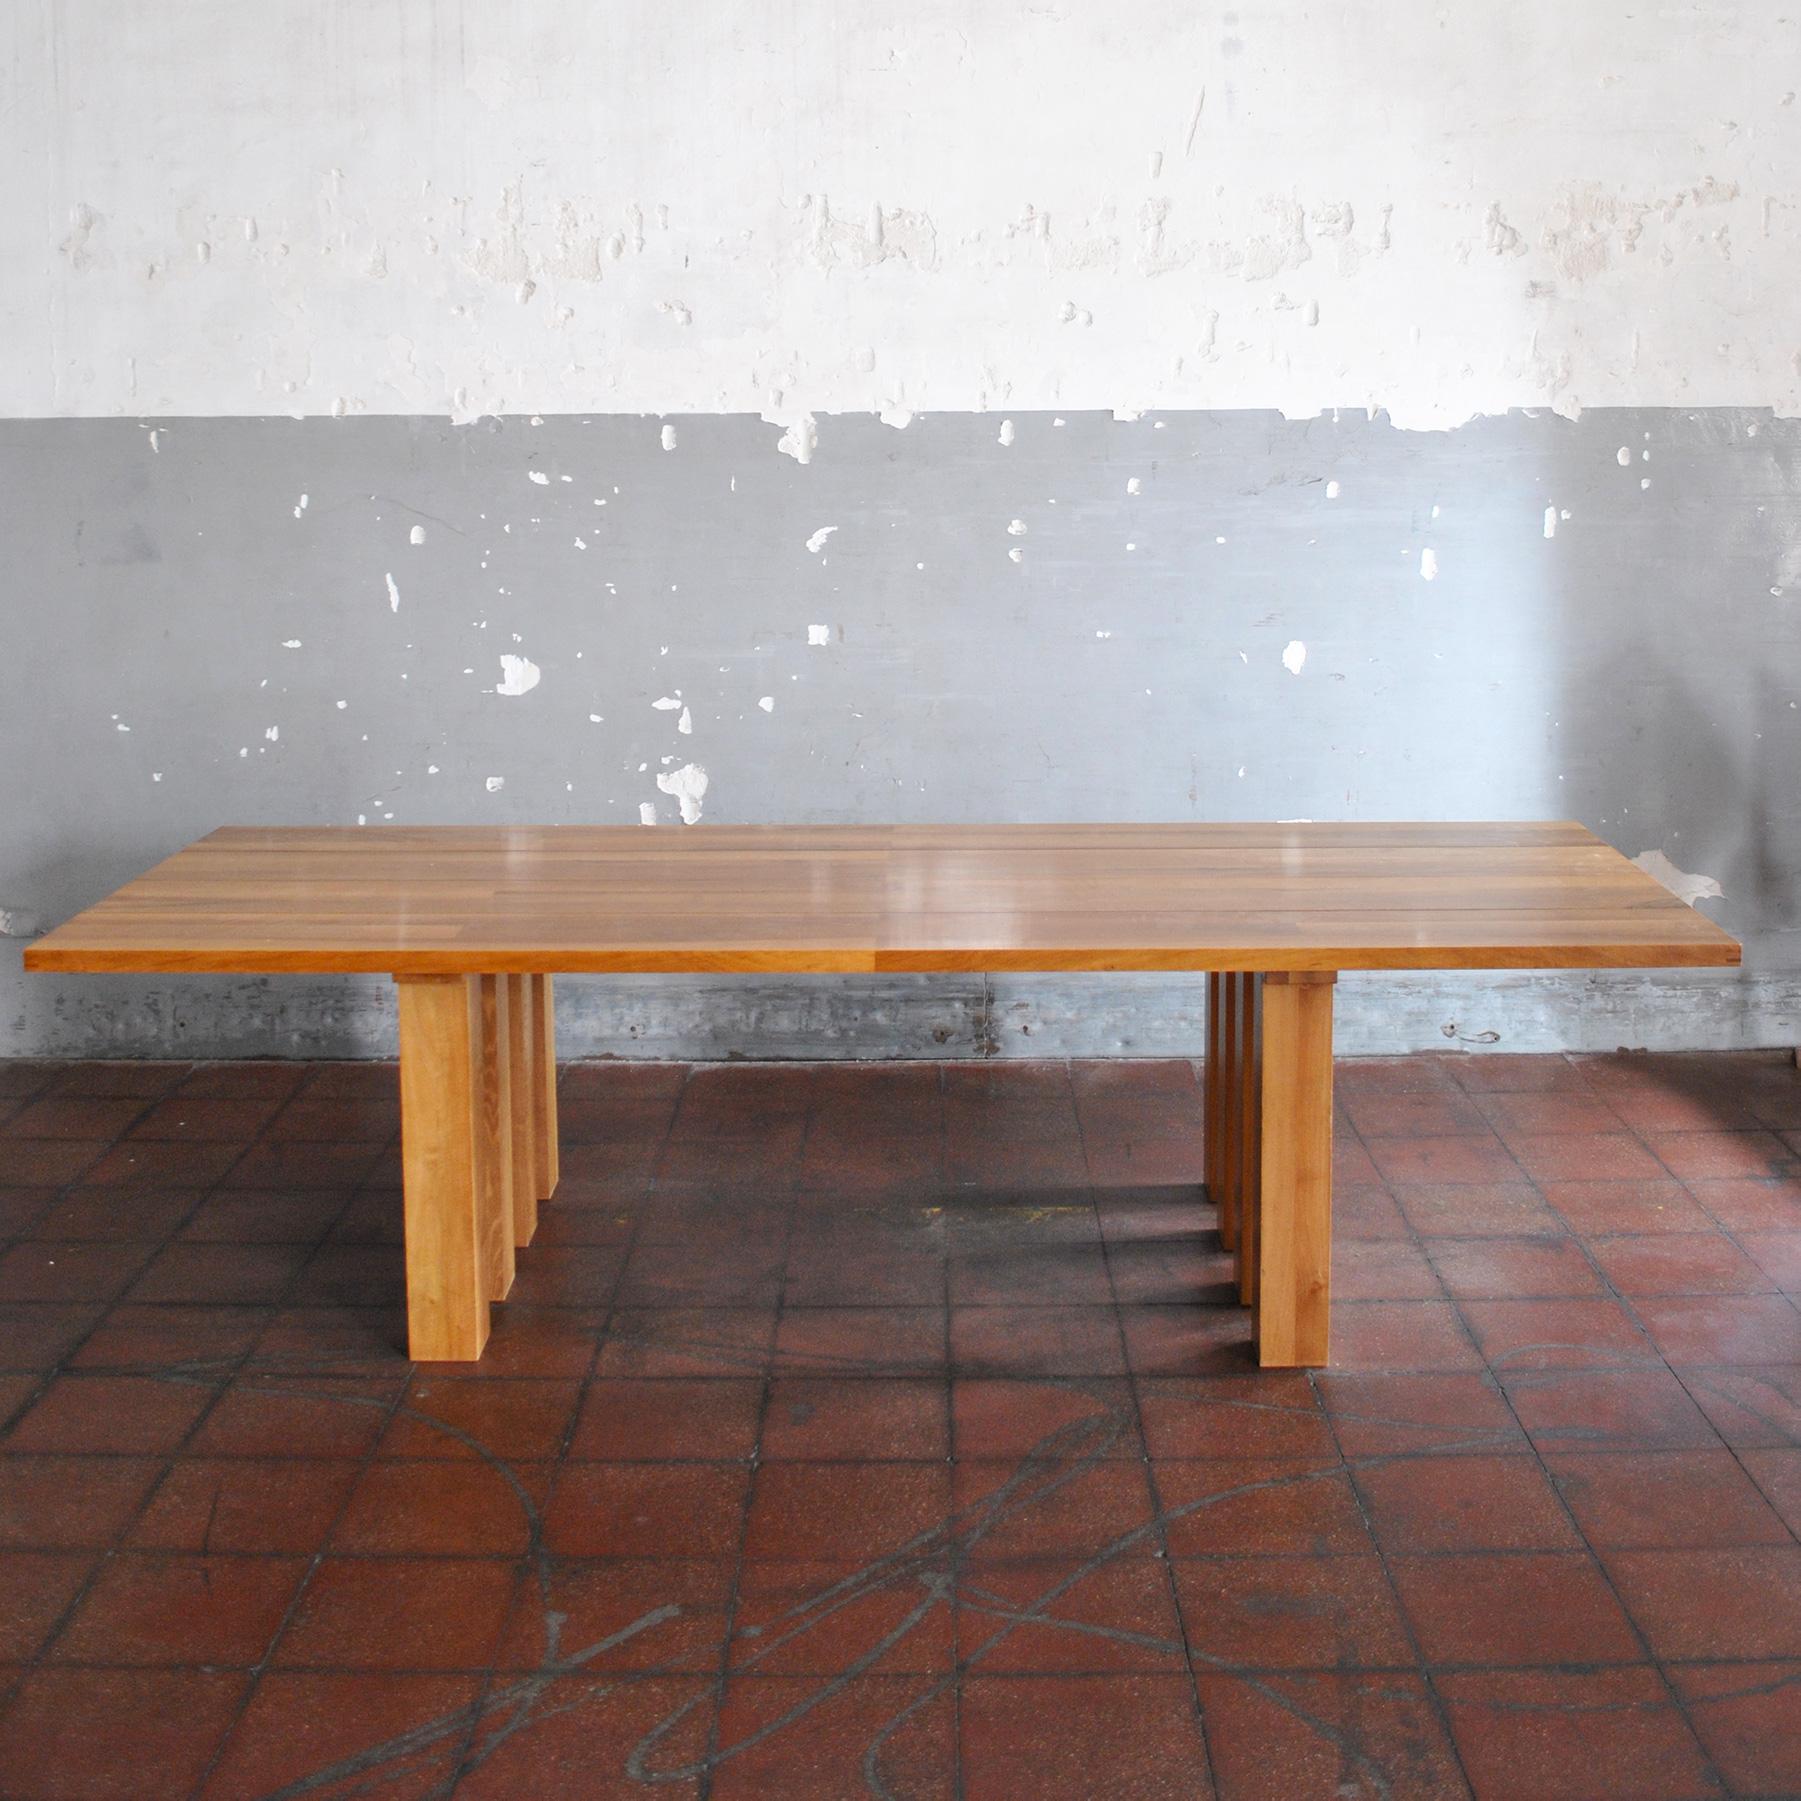 Walnut table La Basilica mod. 451 designer Mario Bellini for Cassina production in the late 1970s.